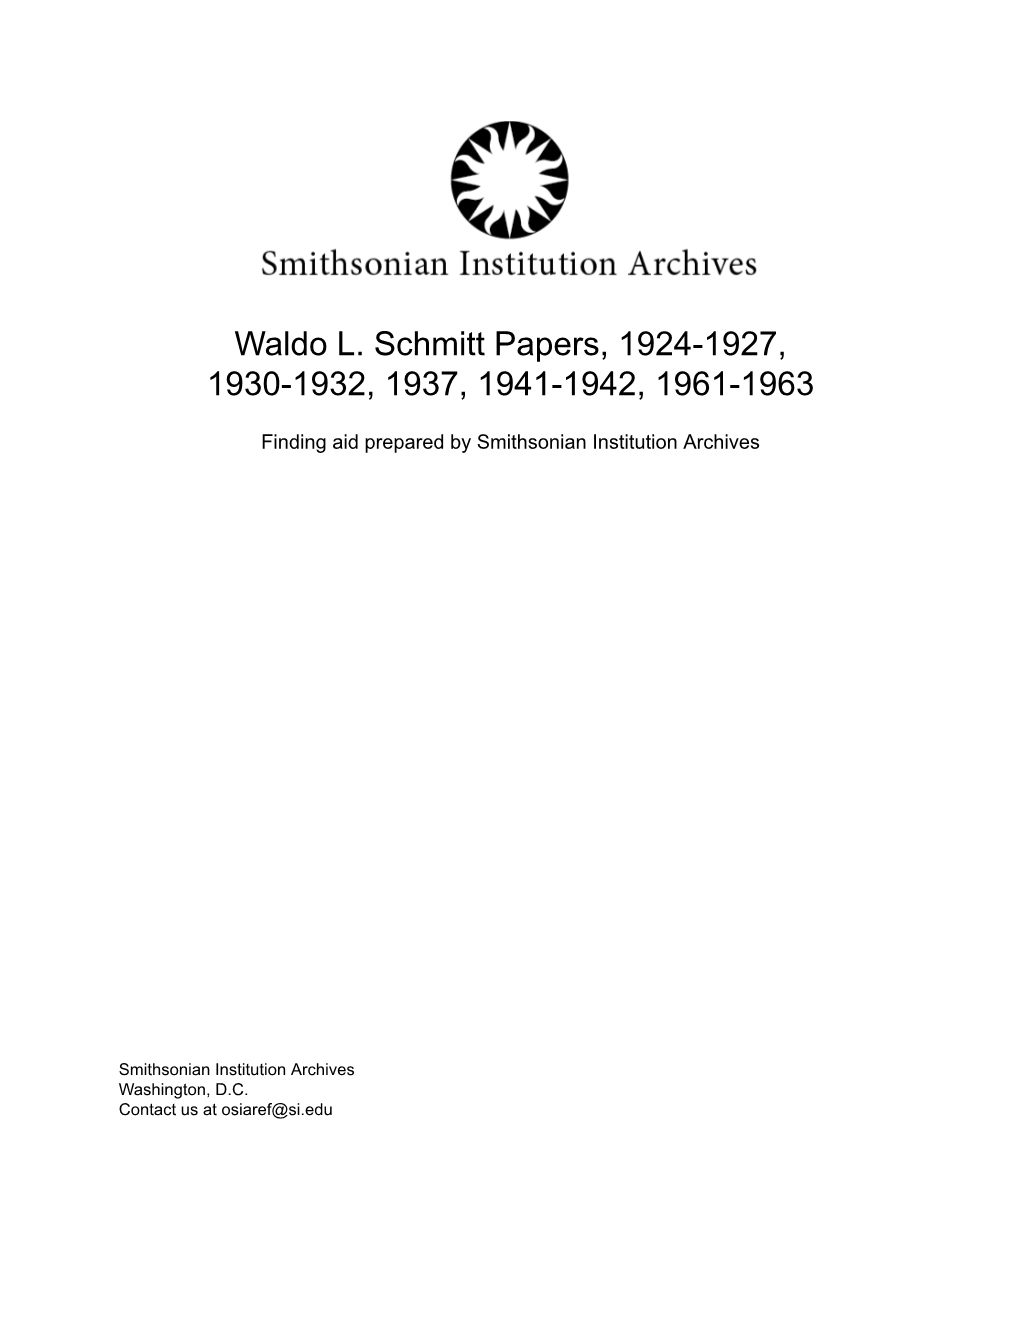 Waldo L. Schmitt Papers, 1924-1927, 1930-1932, 1937, 1941-1942, 1961-1963